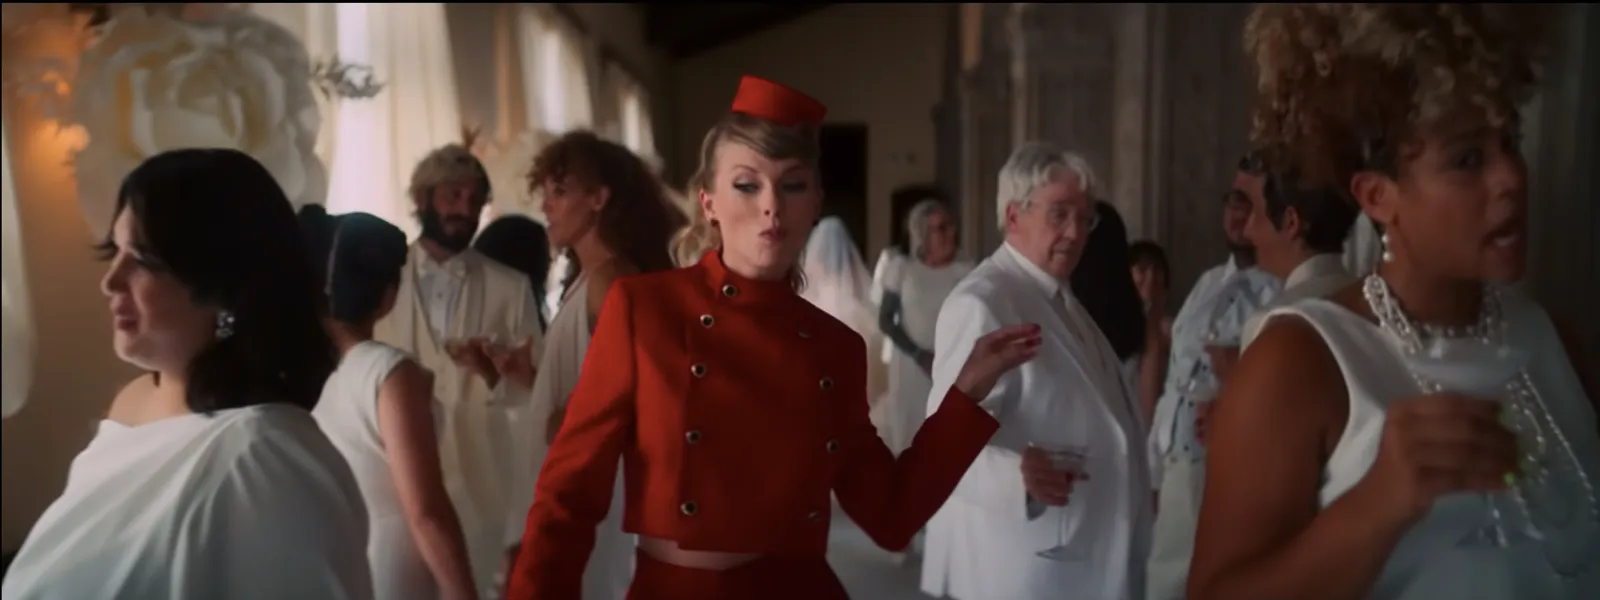 Deretan Kostum Taylor Swift di MV Terbaru yang Mencuri Perhatian